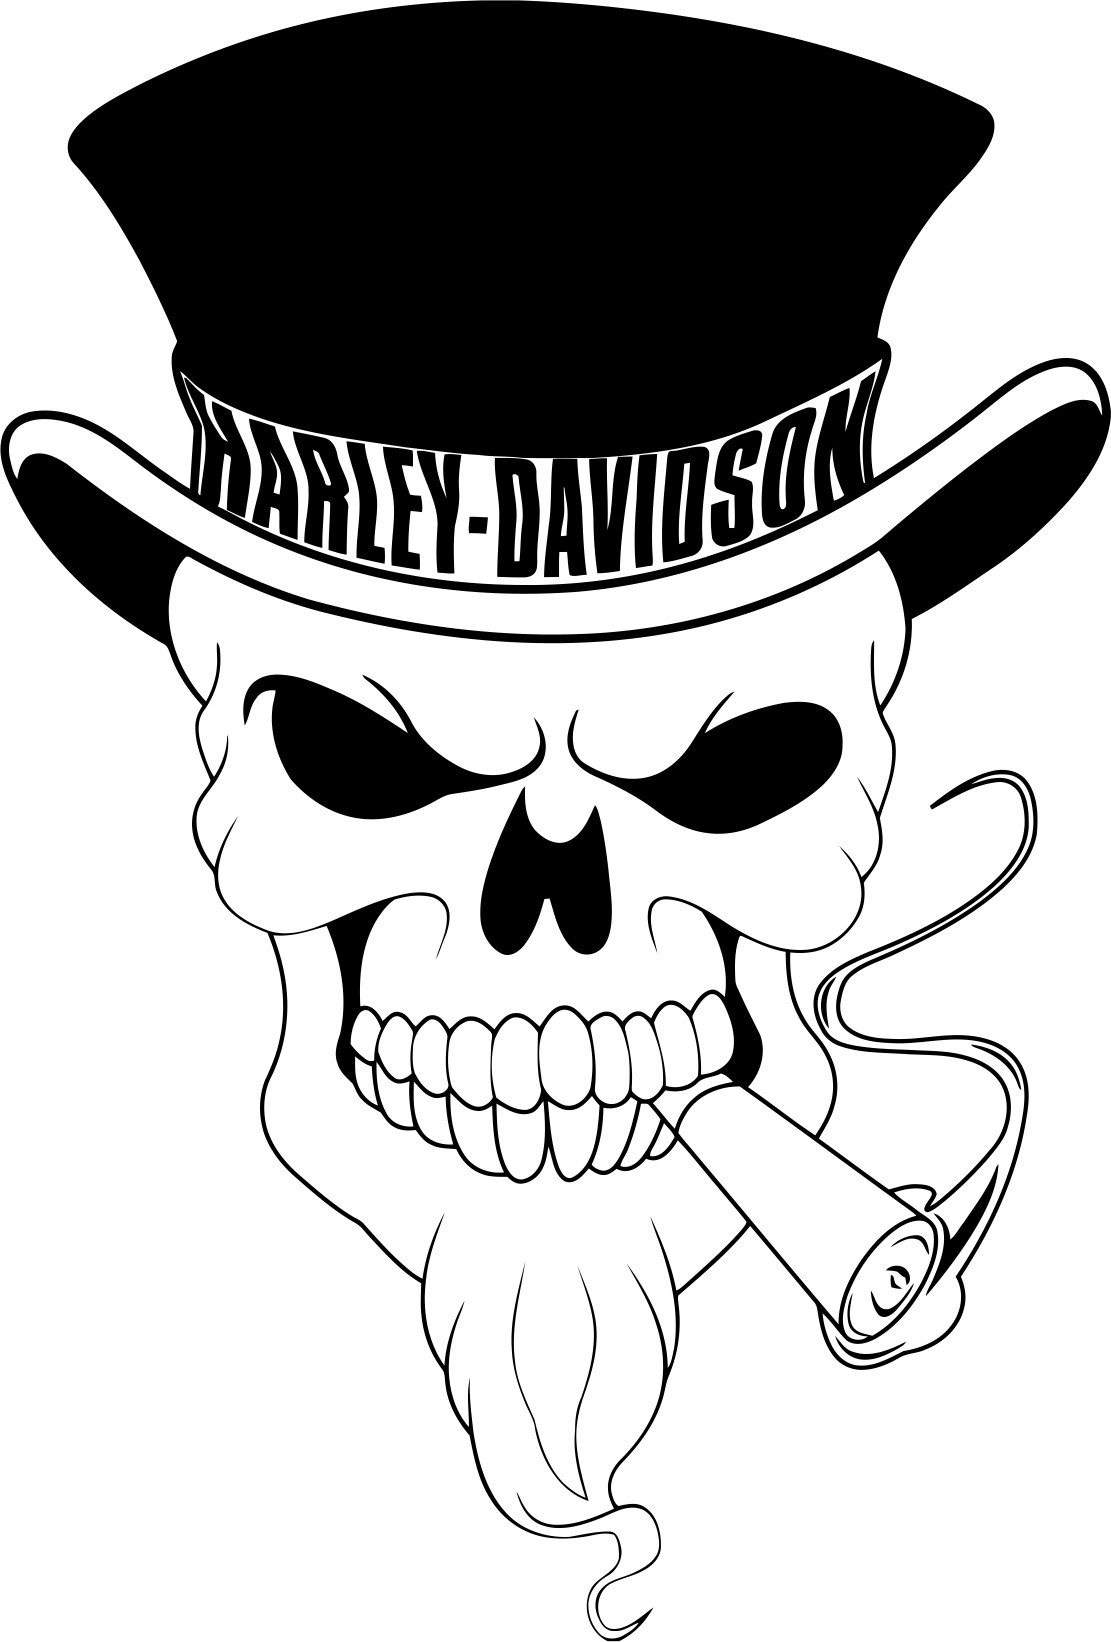 Harley Davidson Skull Vector Laser Cut CDR File Free Download Vectors